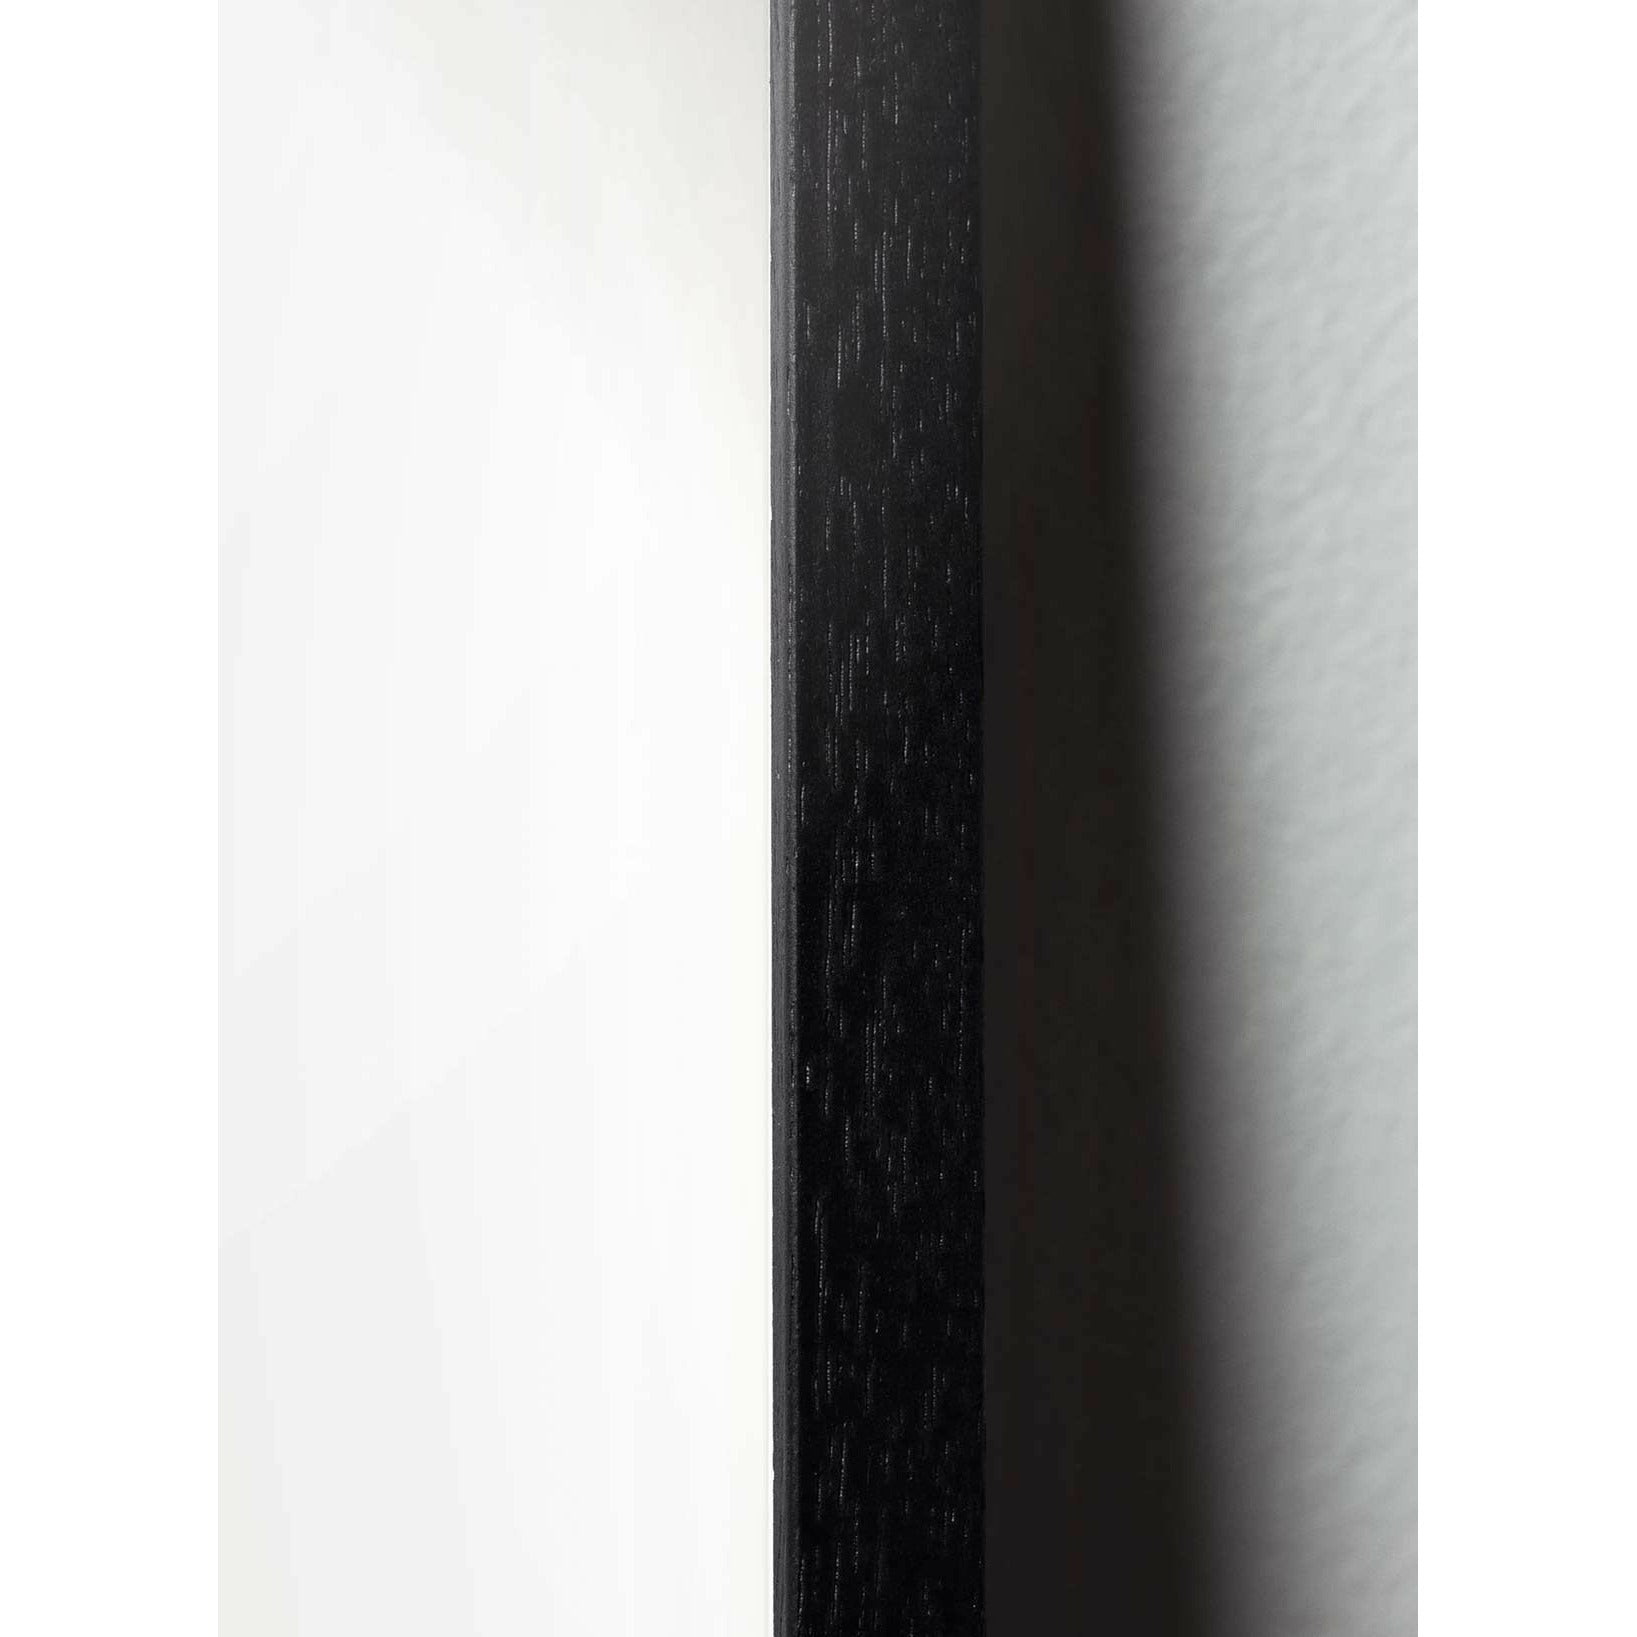 Pomysły Classic Plakat, rama w czarnym lakierowanym drewnie 70 x 100 cm, ciemnoniebieskie tło